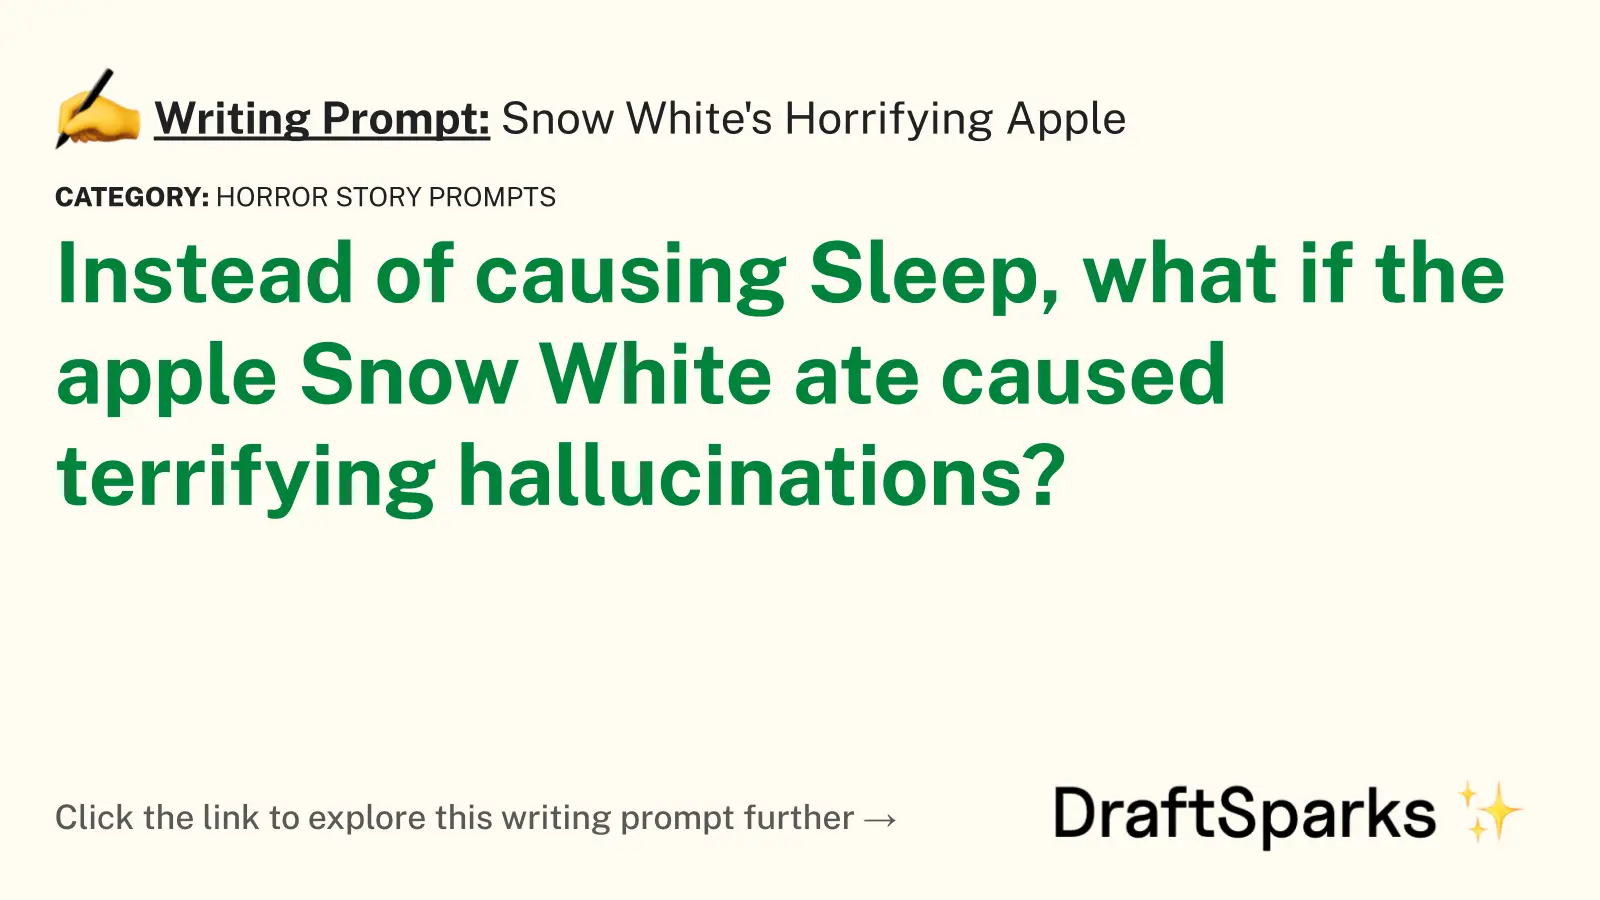 Snow White’s Horrifying Apple